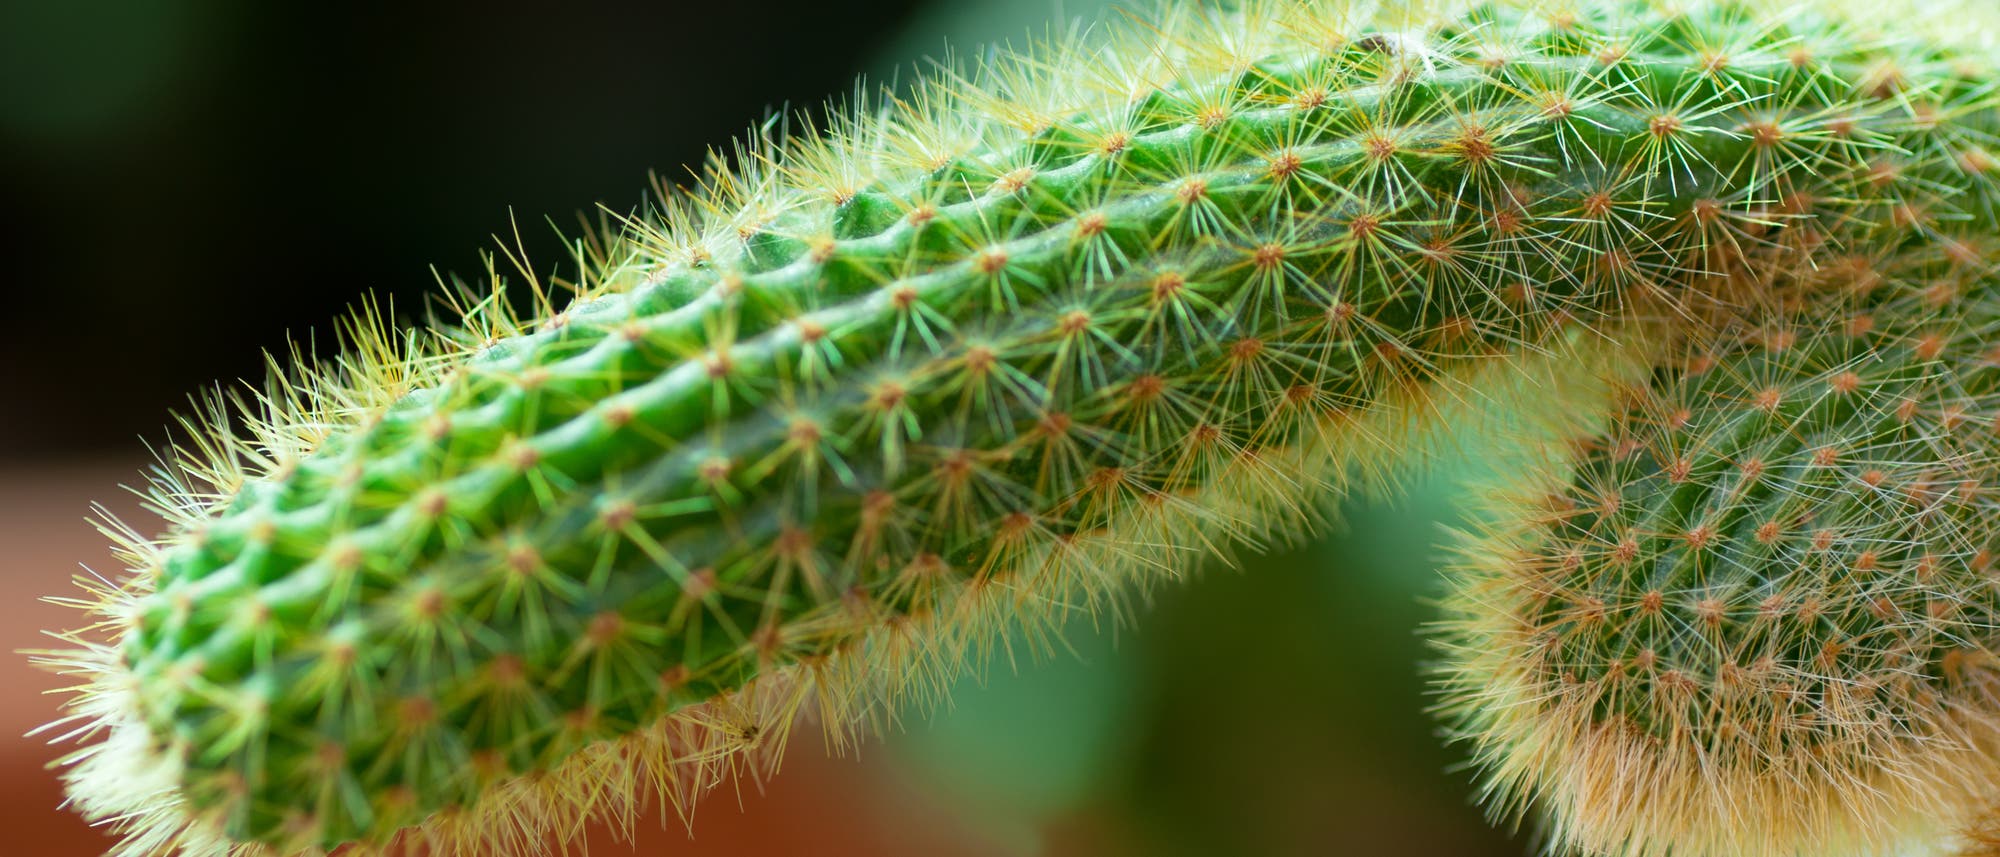 Ein Kaktus, der ein bisschen wie ein Phallus aussieht